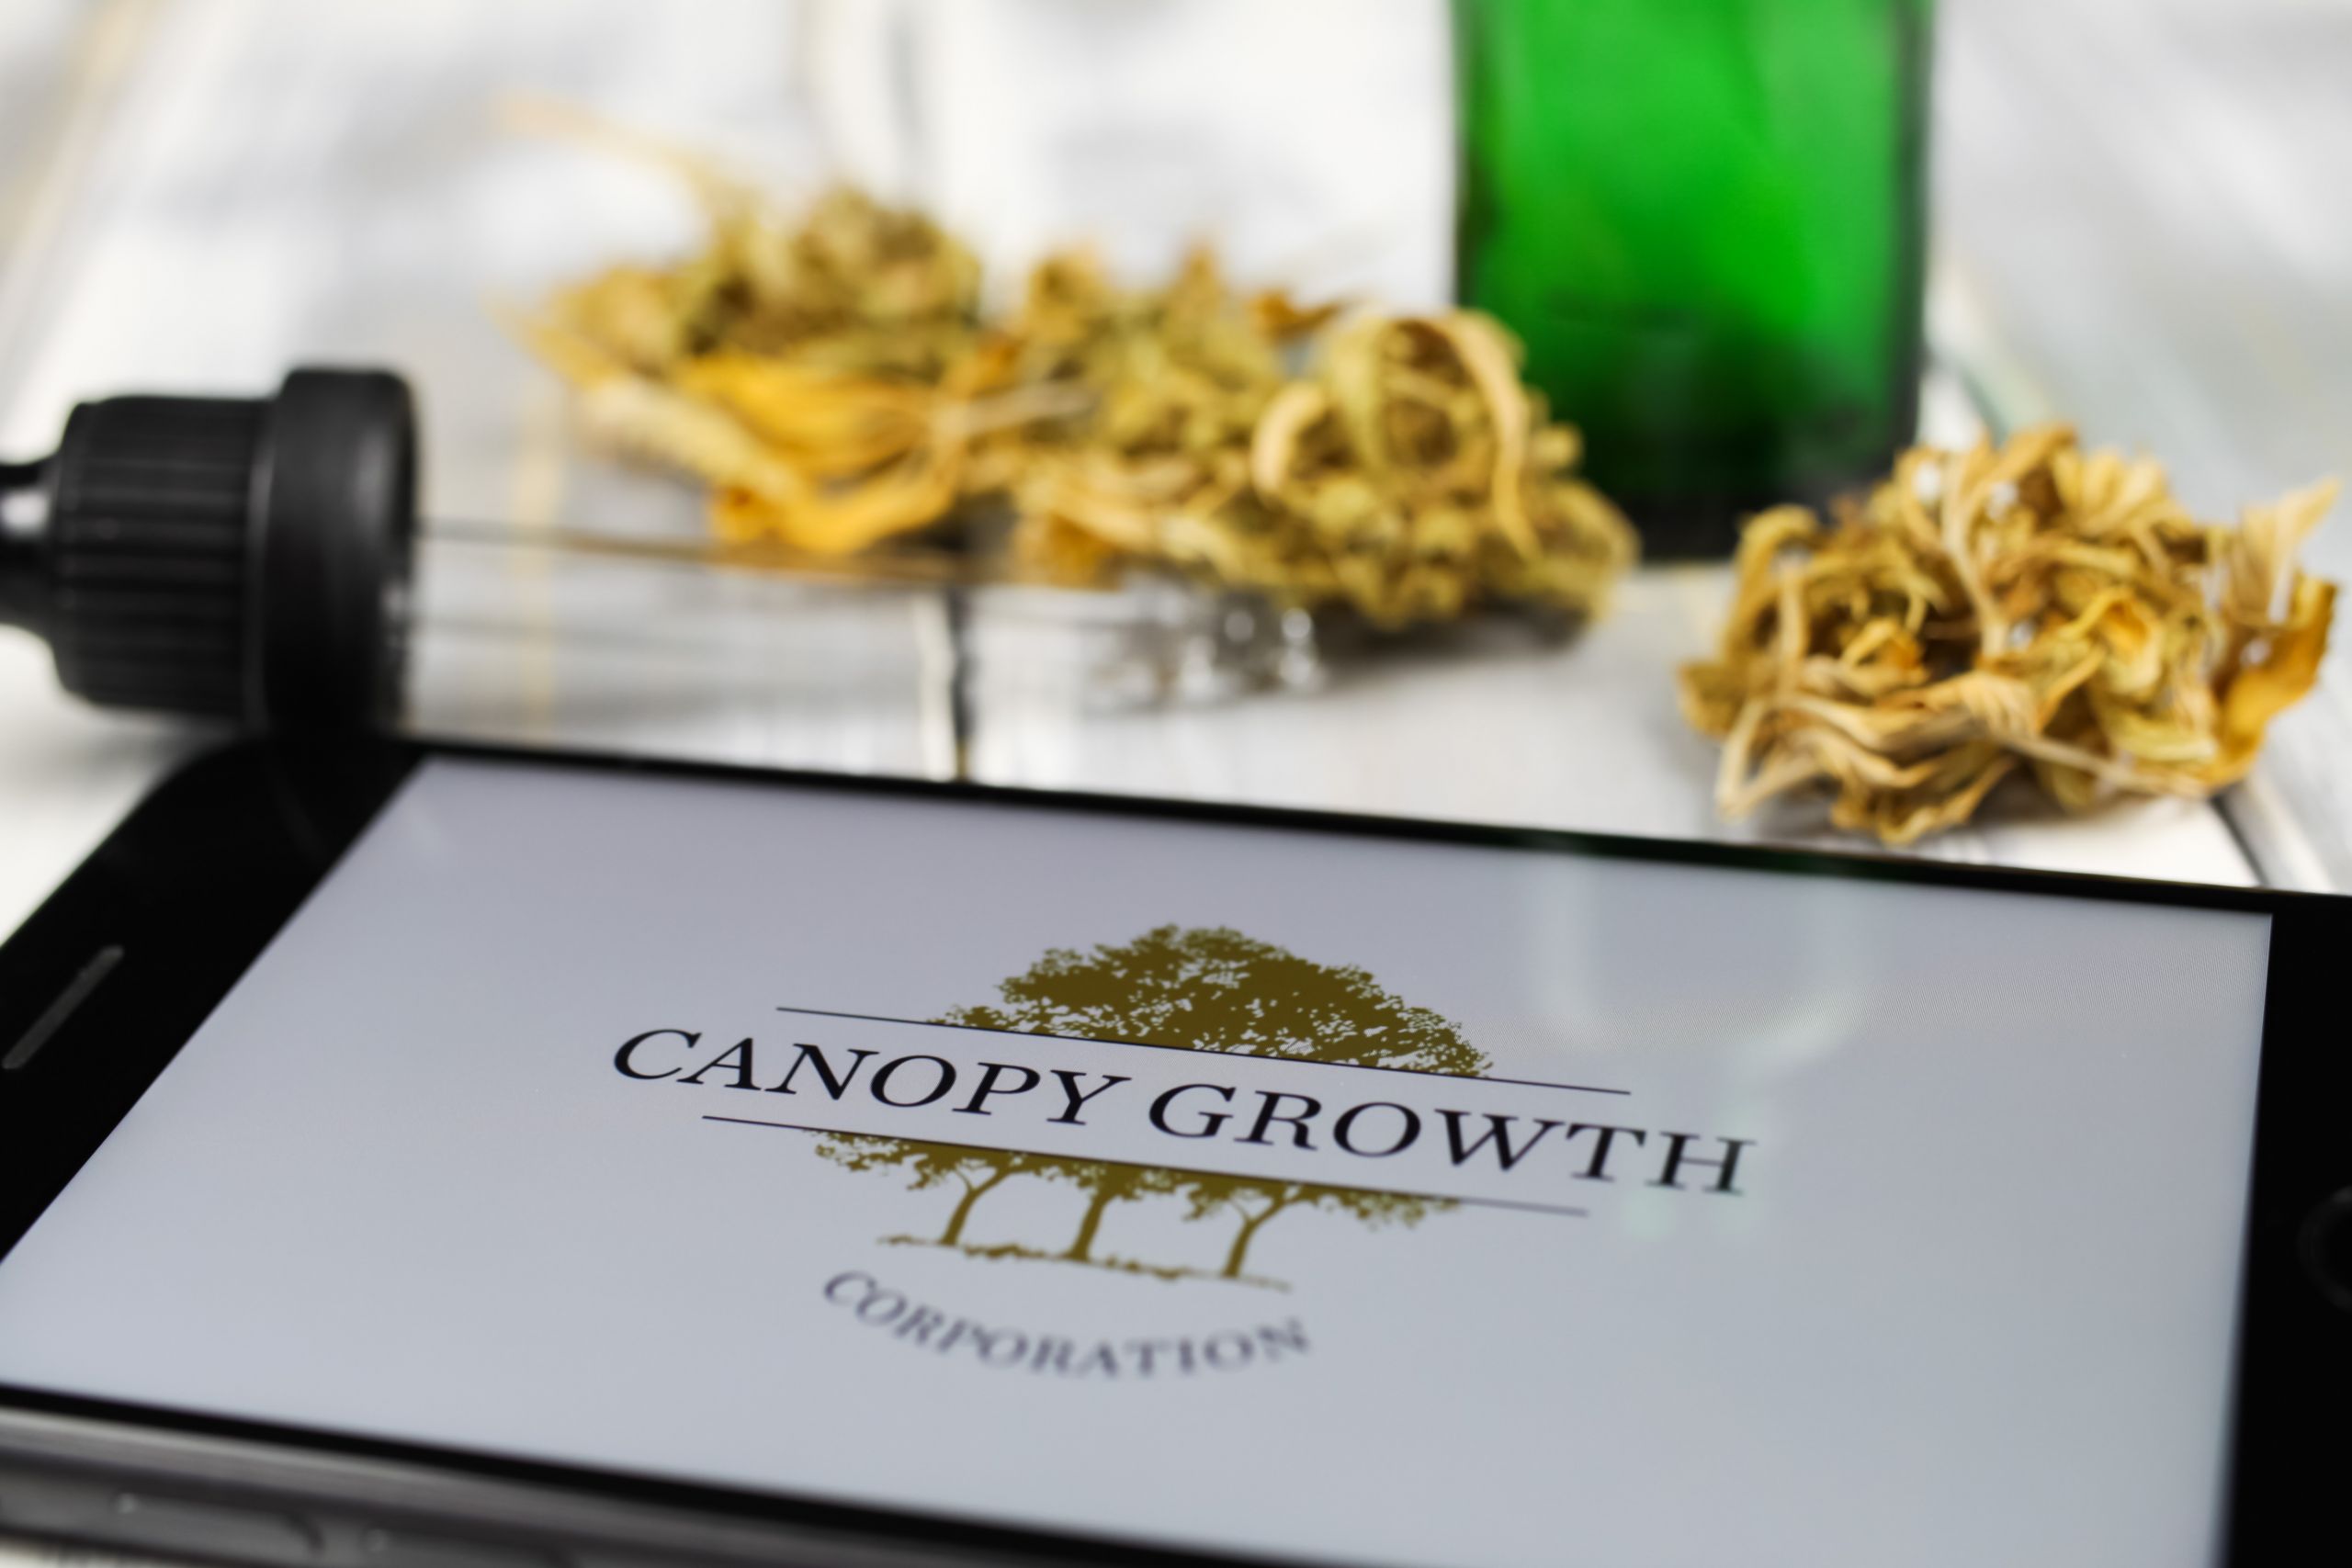 Read more about the article Canopy Growth Quartalsbilanz: Analysten erwarten Umsatzrückgang und sinkende Gewinnzahlen